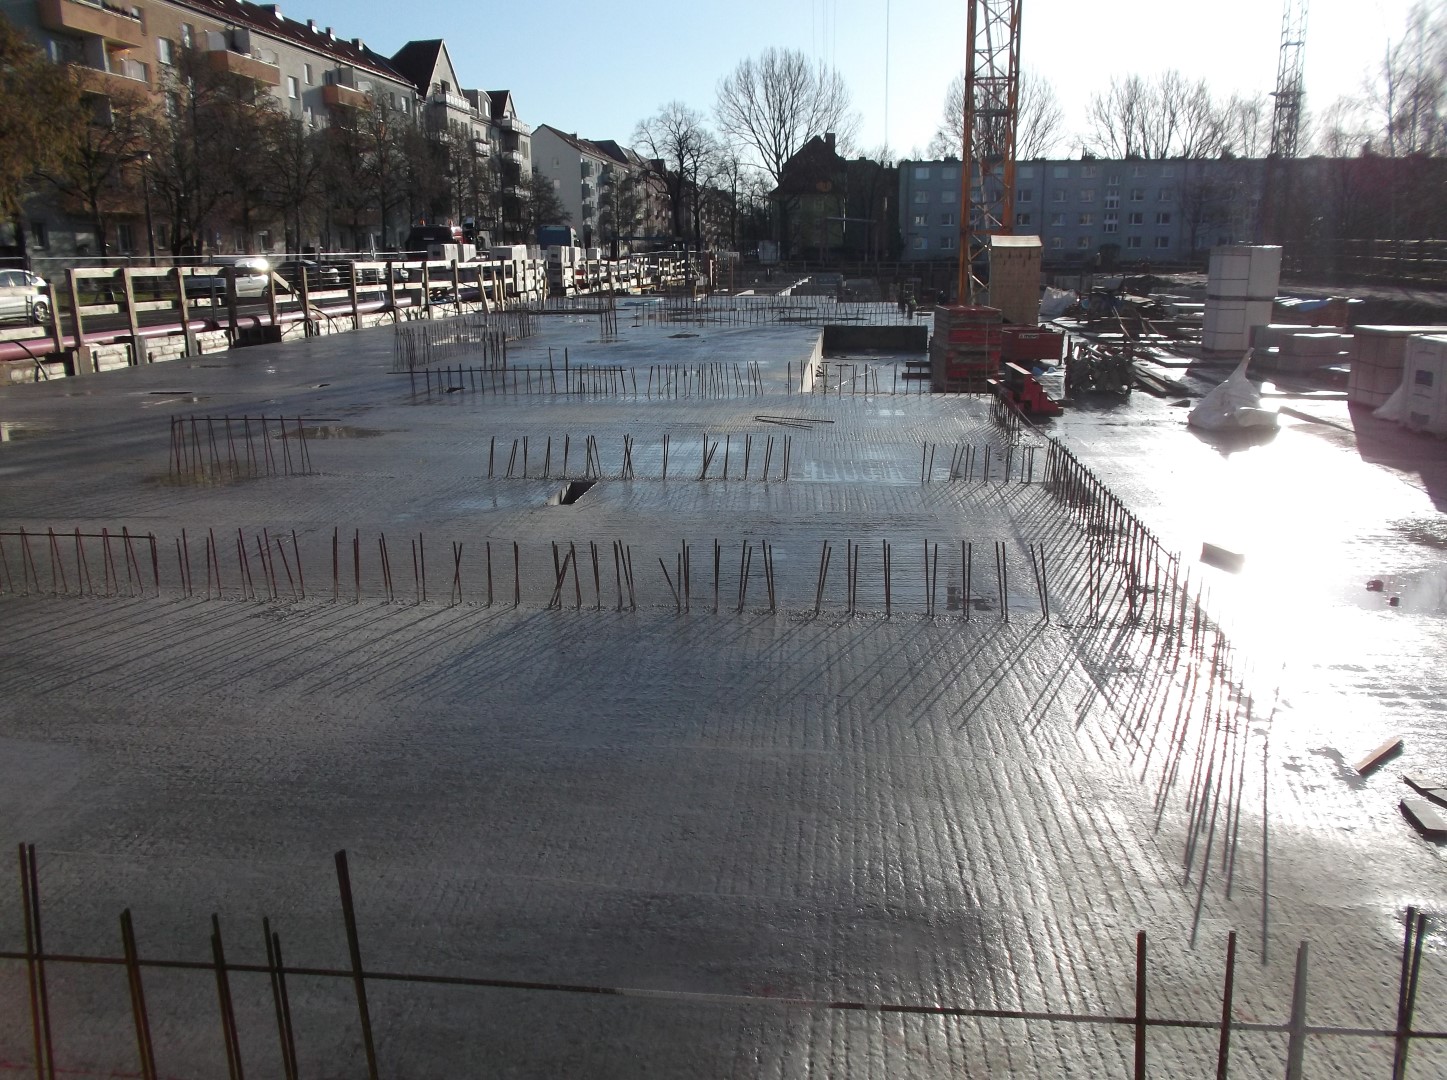 07.01.2014 - Fertig betonierte Decke über Tiefgarage